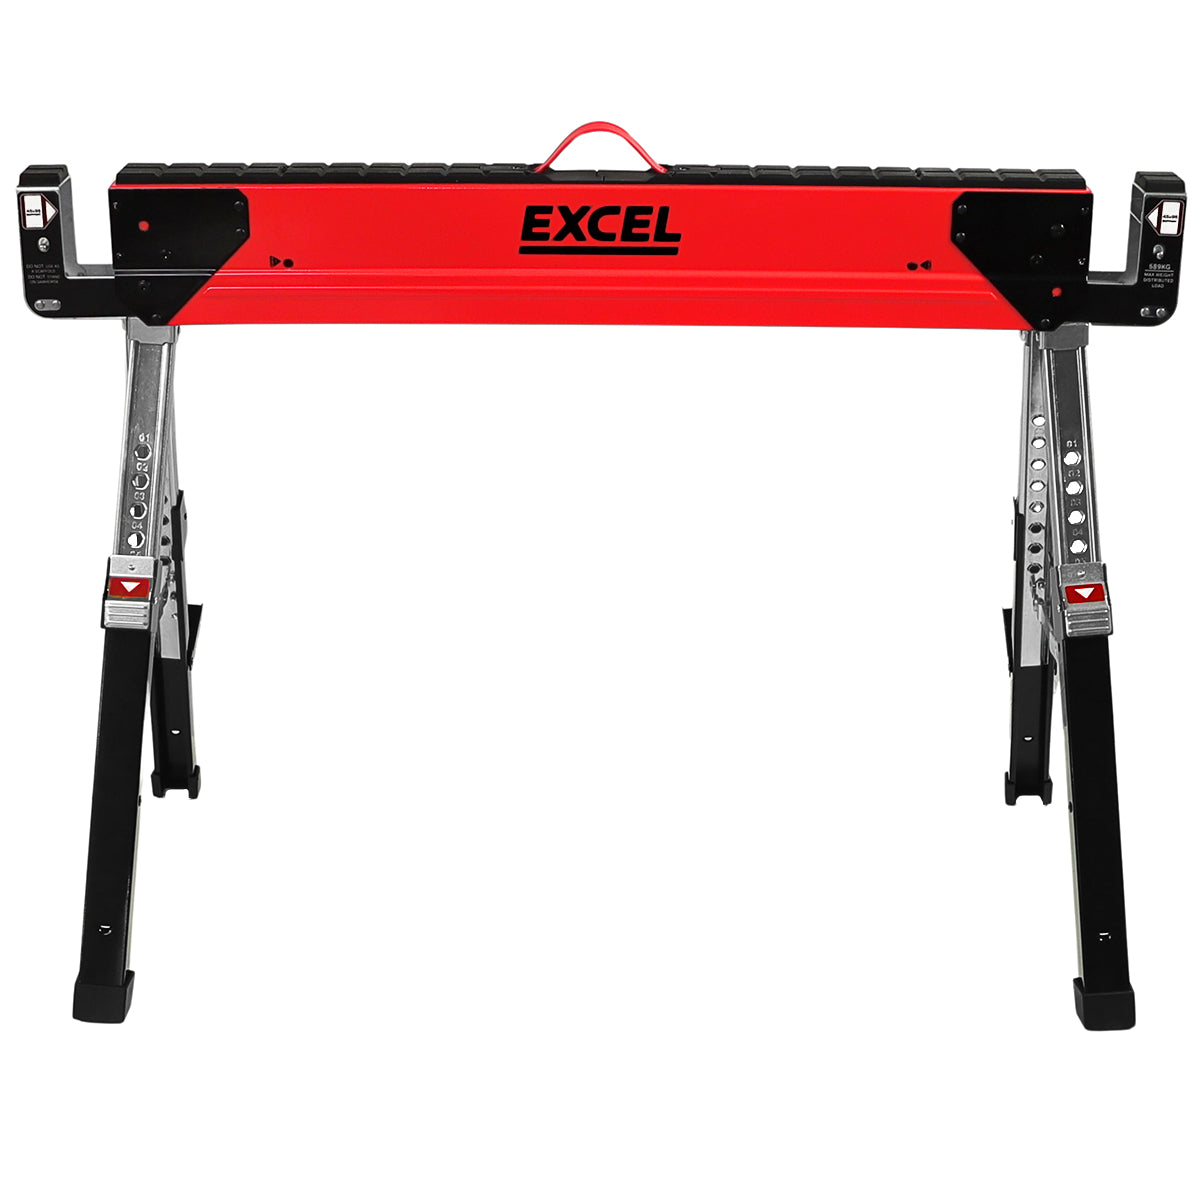 Excel Steel Sawhorse Adjustable Legs Twin Pack 1178Kg Capacity